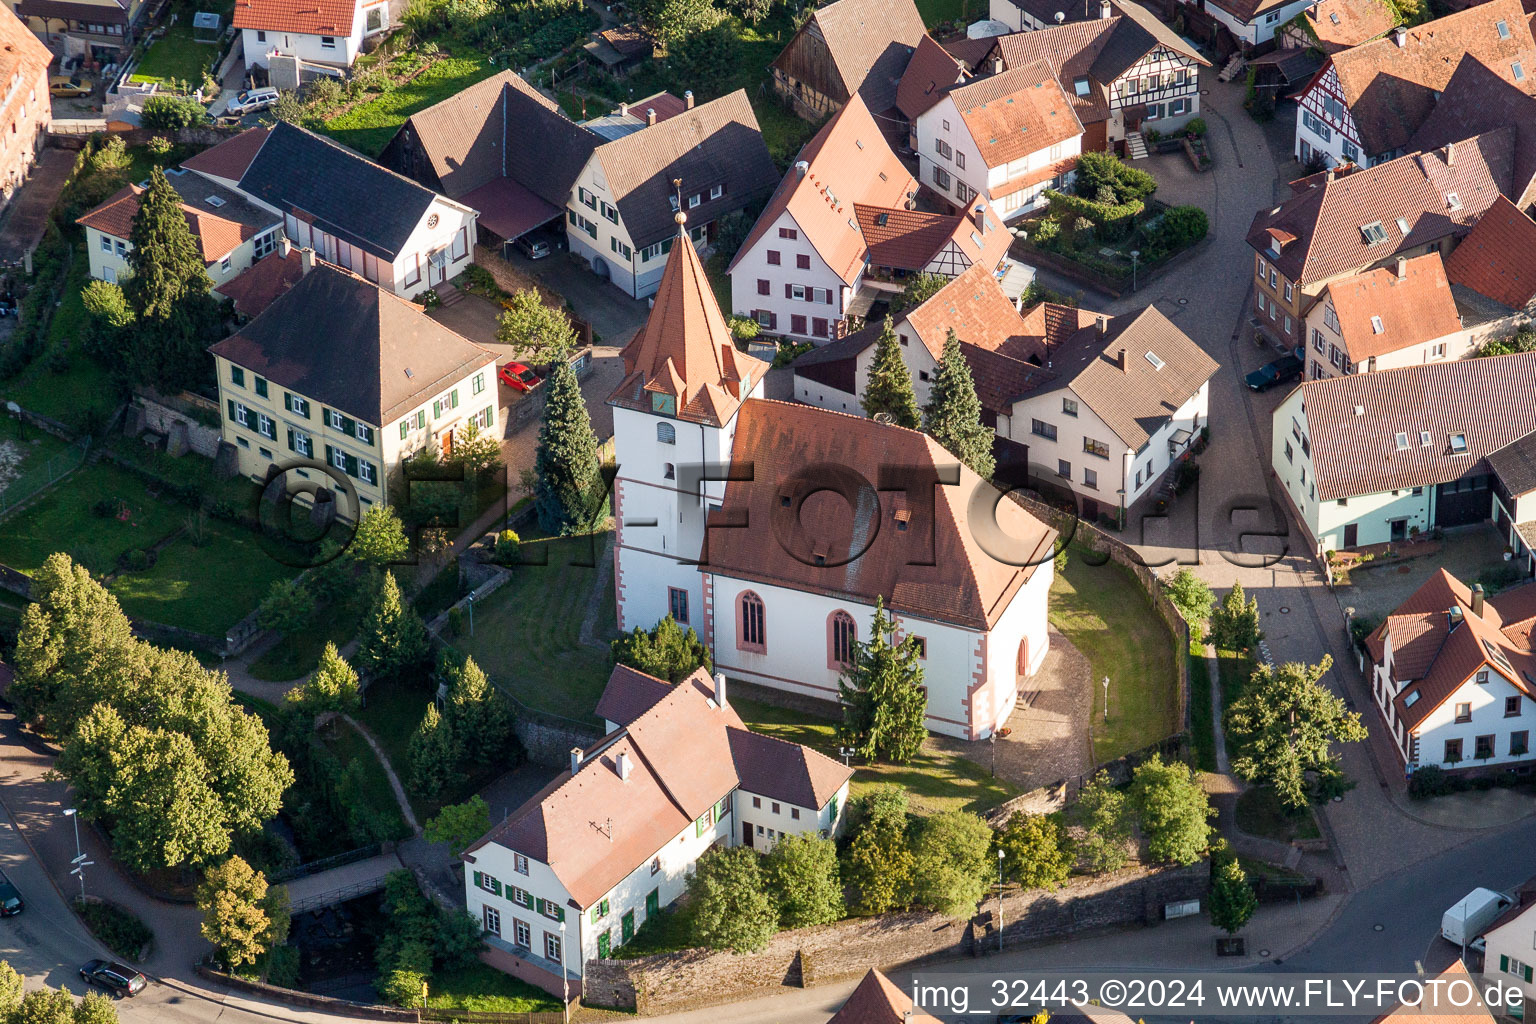 Vue aérienne de Év. Église d'Ellmendingen au centre du village dans le quartier d'Ellmendingen à Keltern dans le département Bade-Wurtemberg, Allemagne